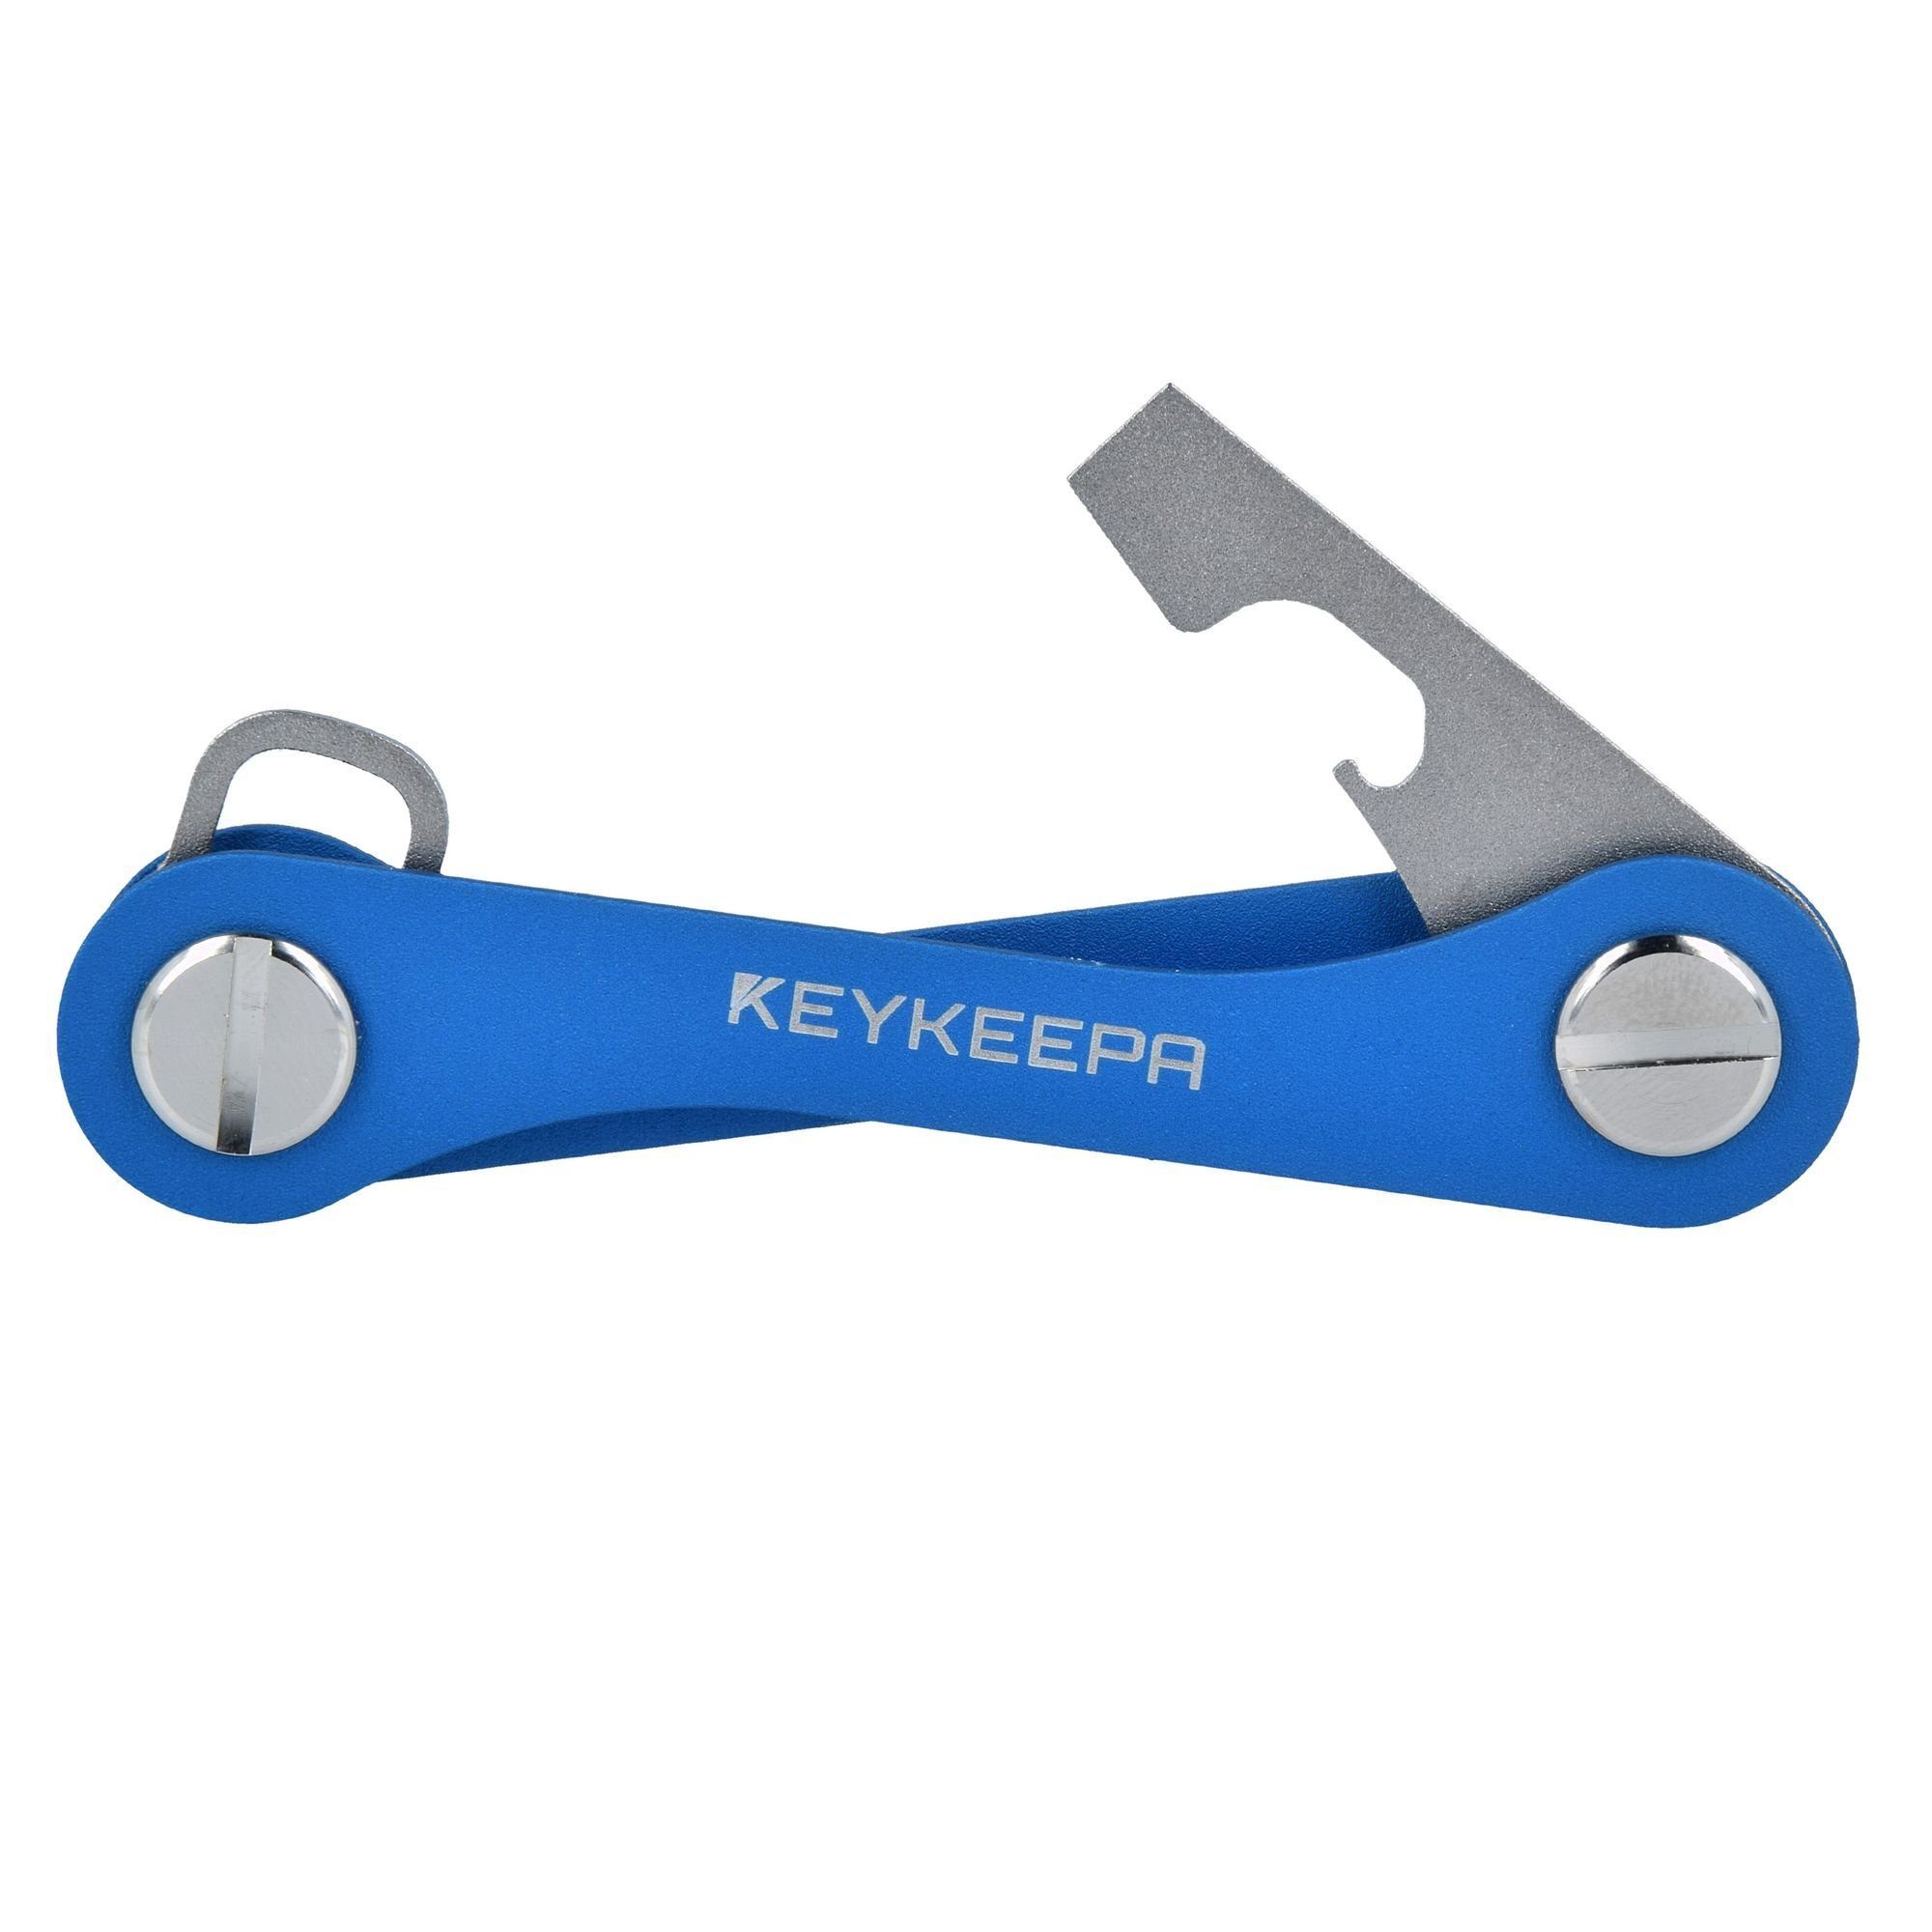 Keykeepa Classic, blue Aluminium Schlüsseltasche